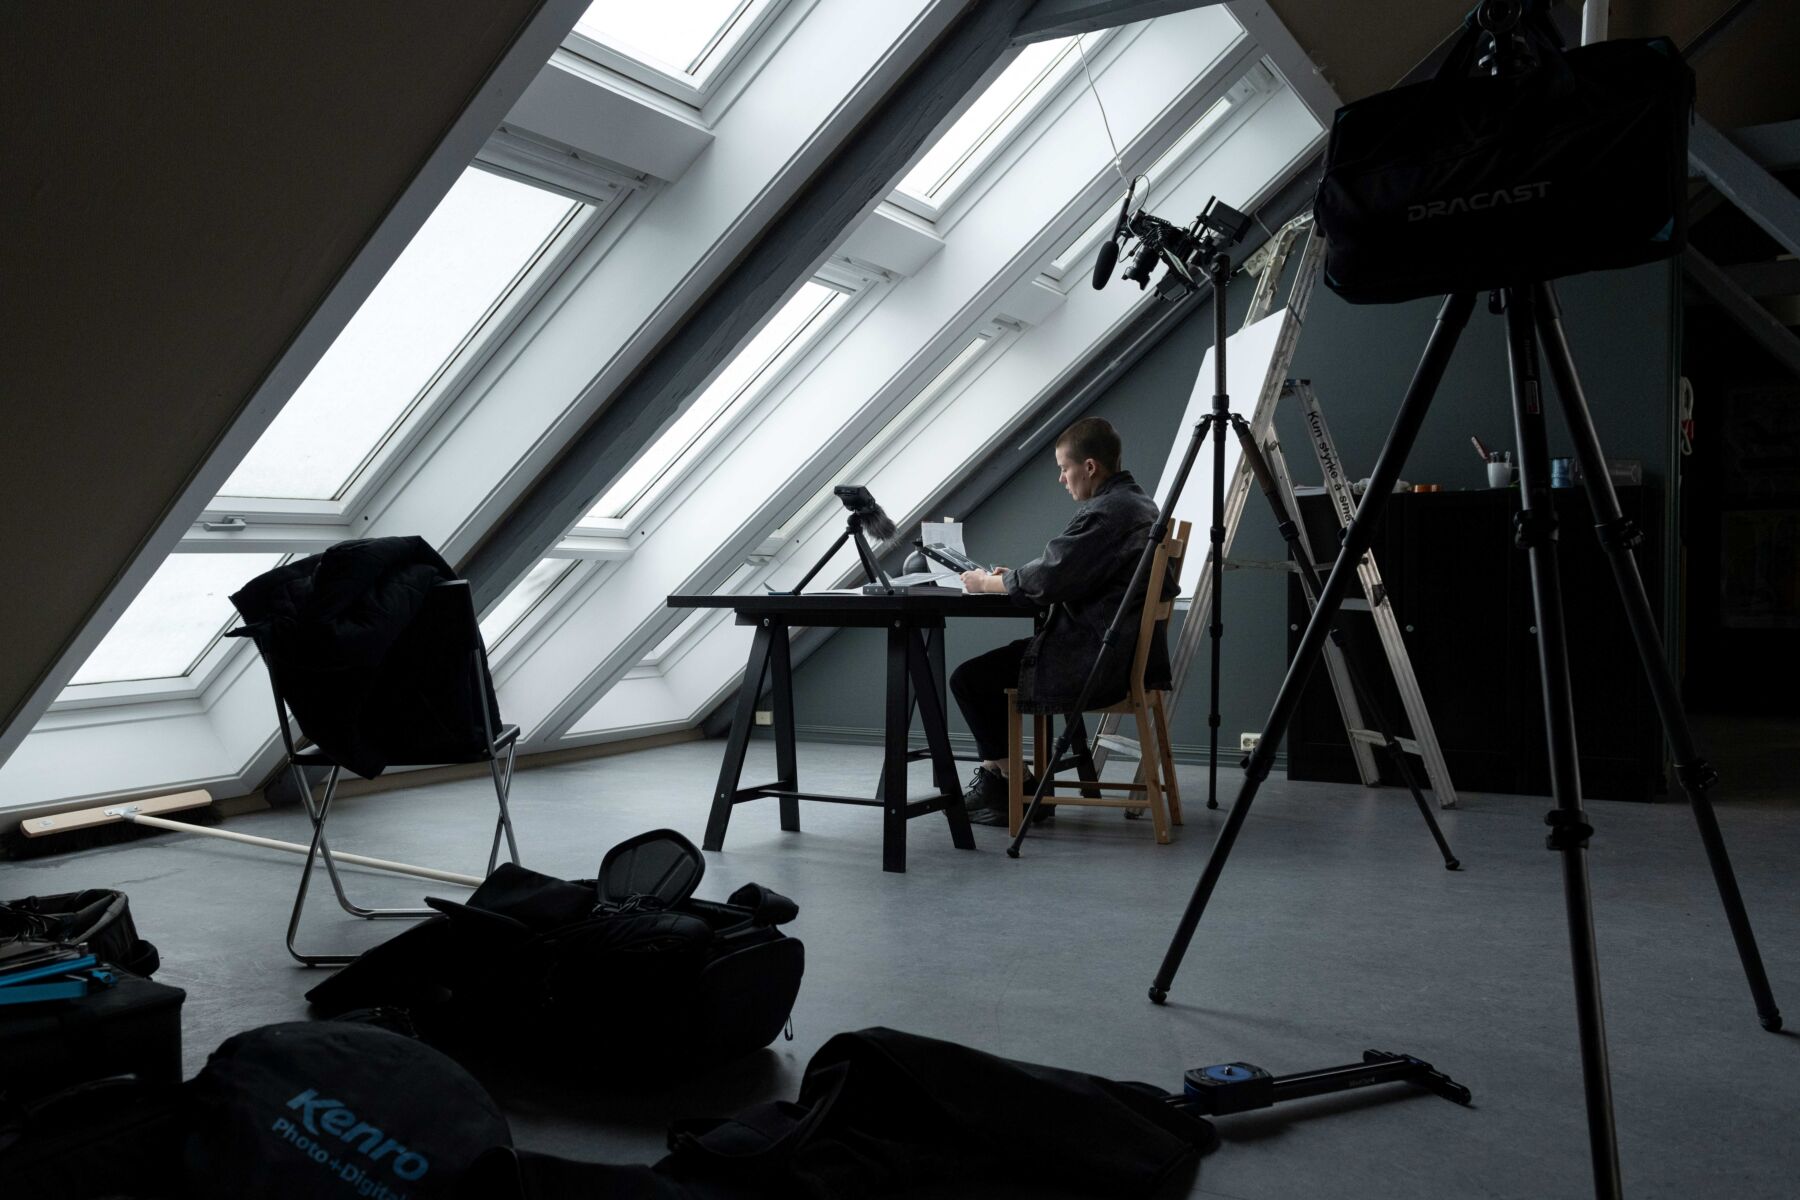 En person sitter i et rom med skråtak og -vinduer. Rundt står utstyr til filmproduksjon. Foto.